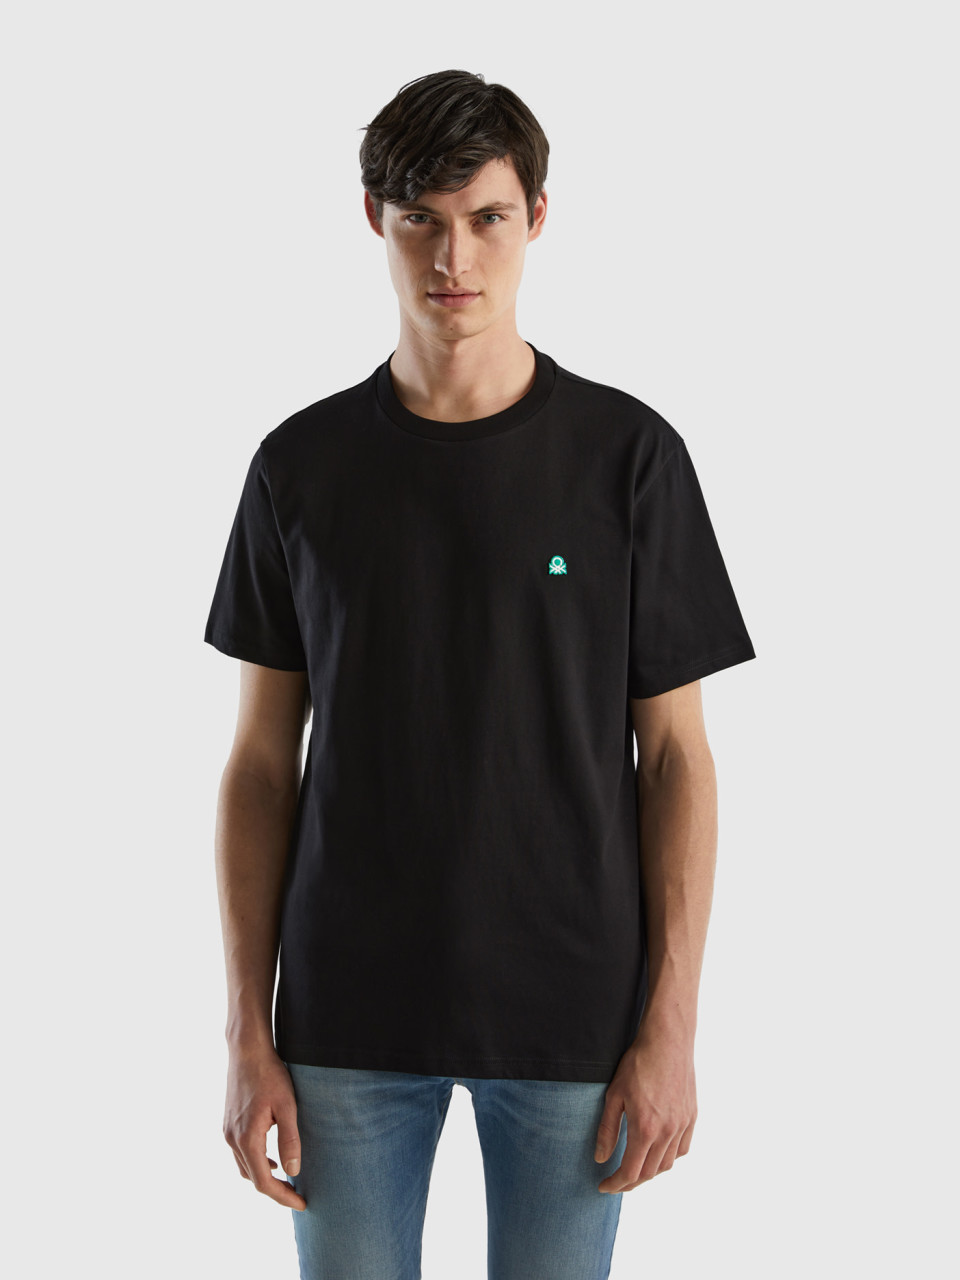 Benetton, T-shirt Basica 100% Cotone Bio, Nero, Uomo